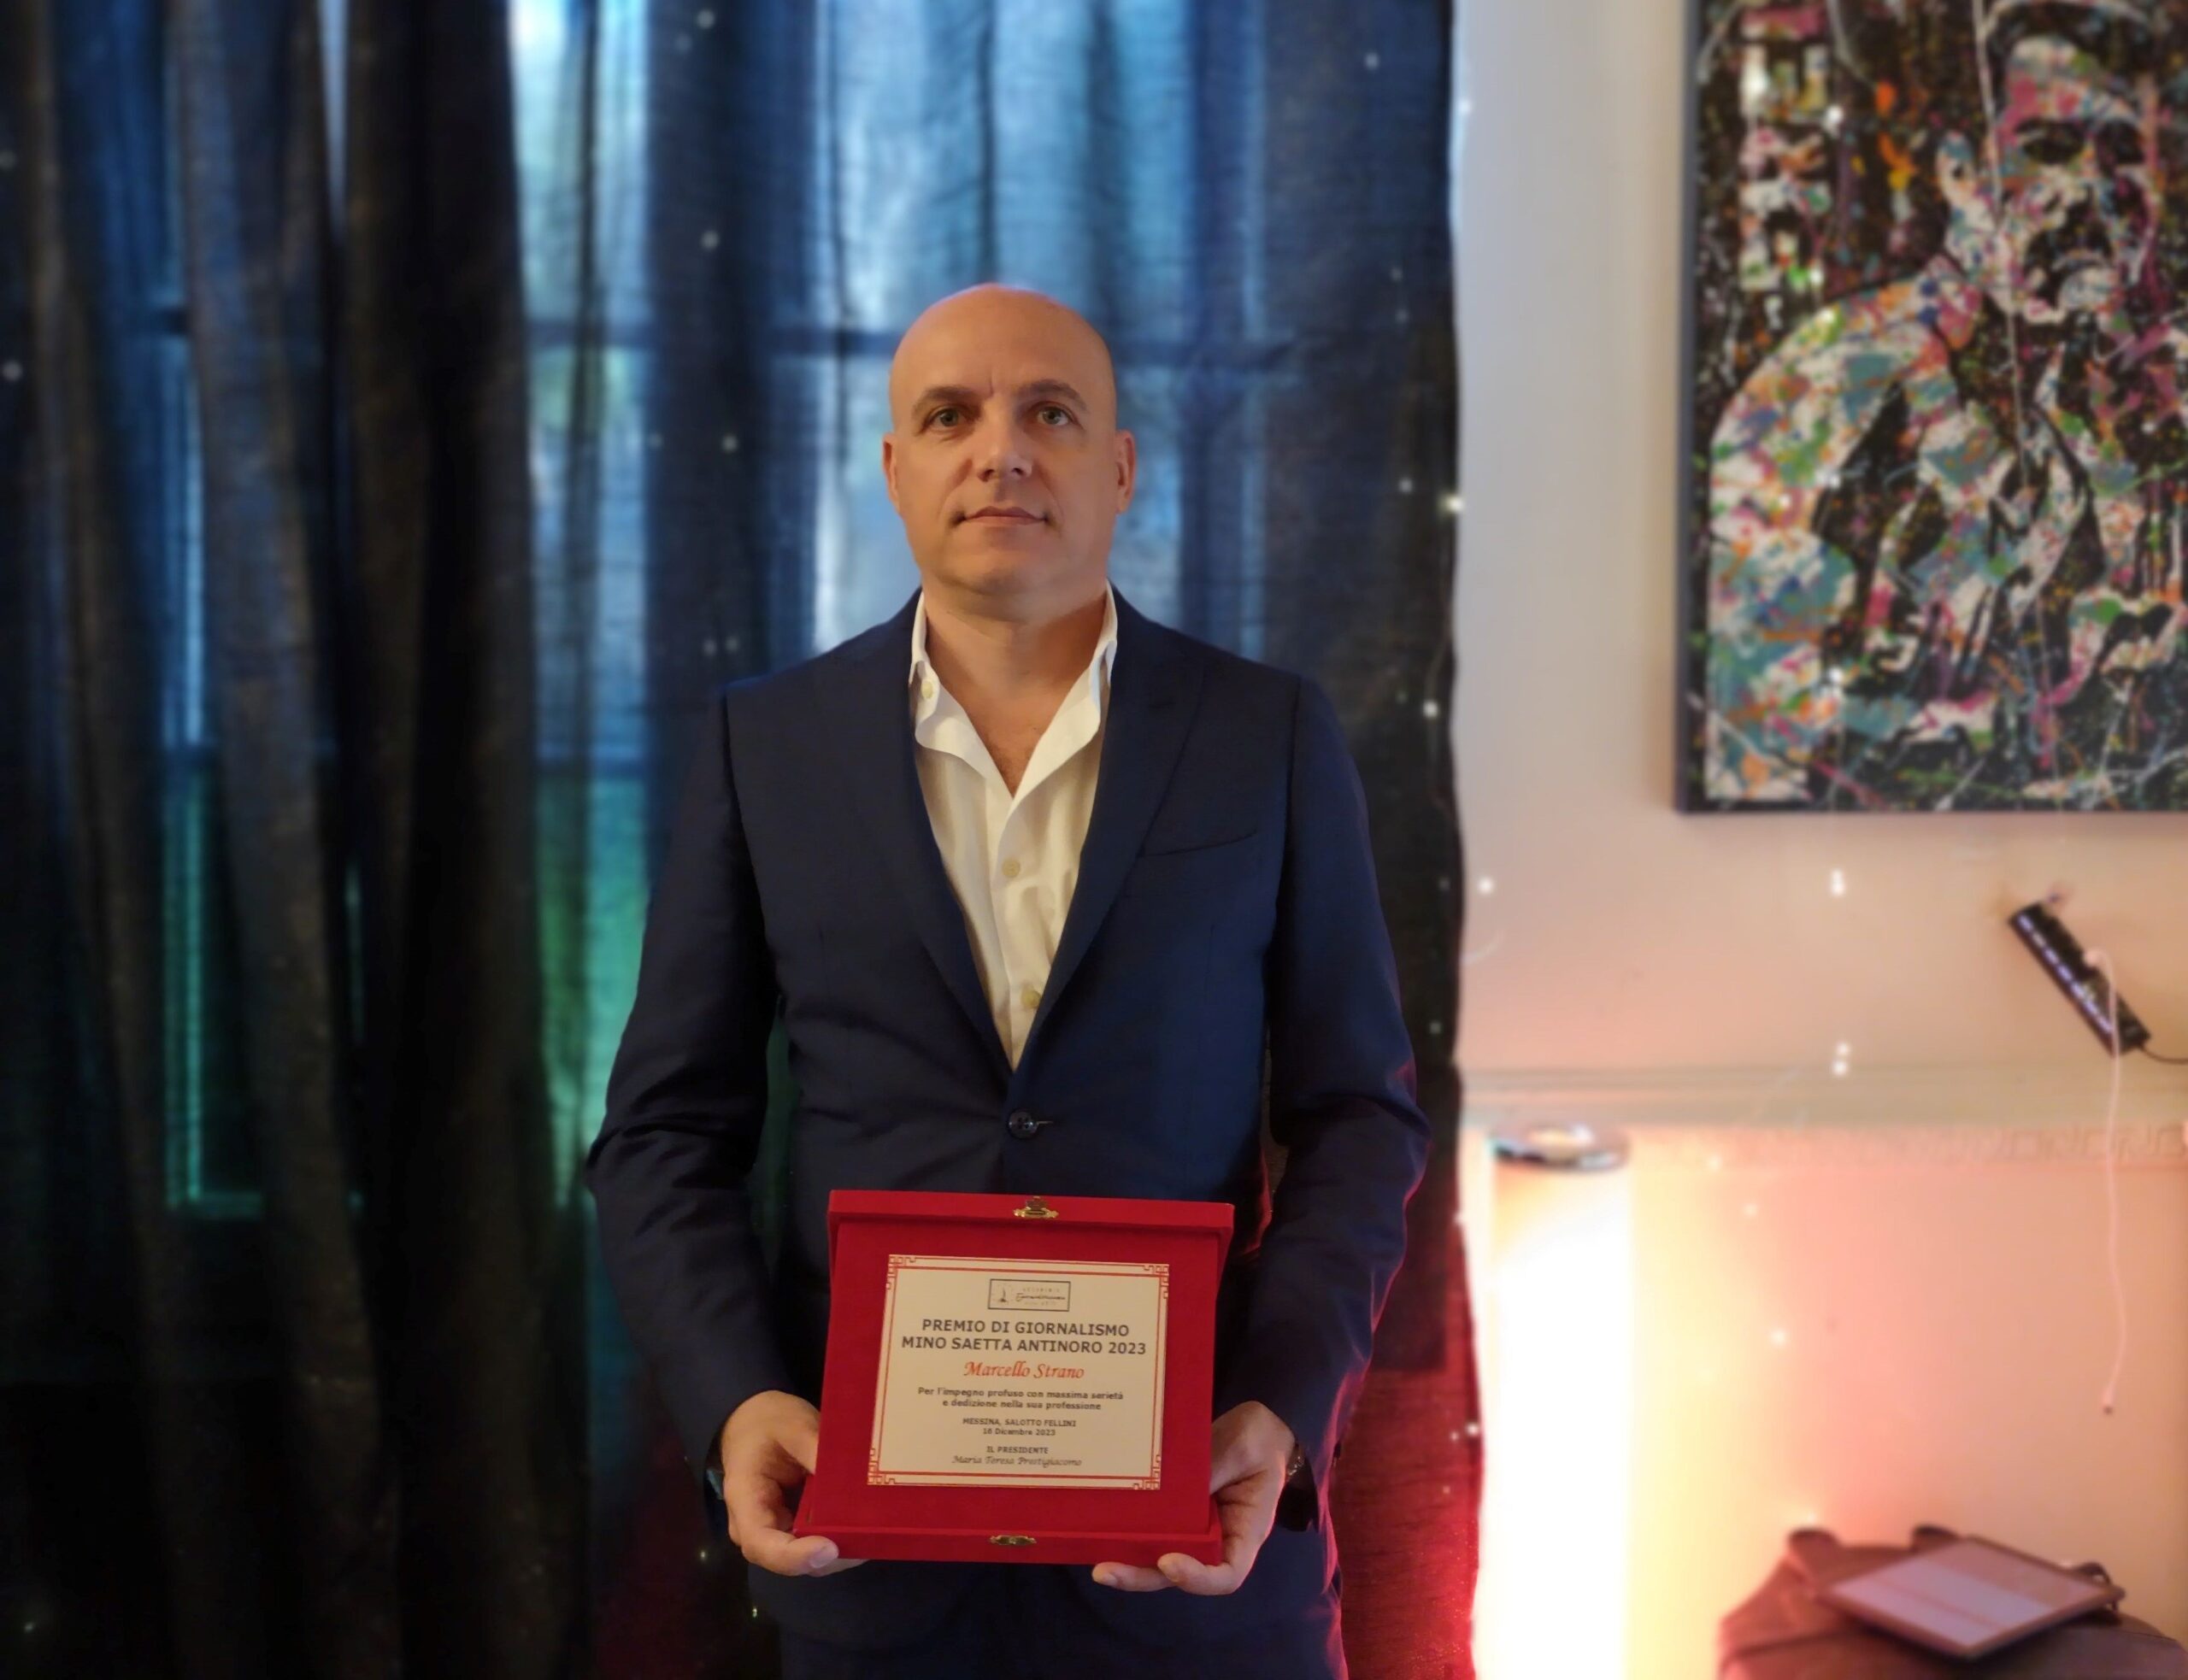 Marcello Strano vince Premio Giornalismo Mino Saetta Antinoro 2023 Una